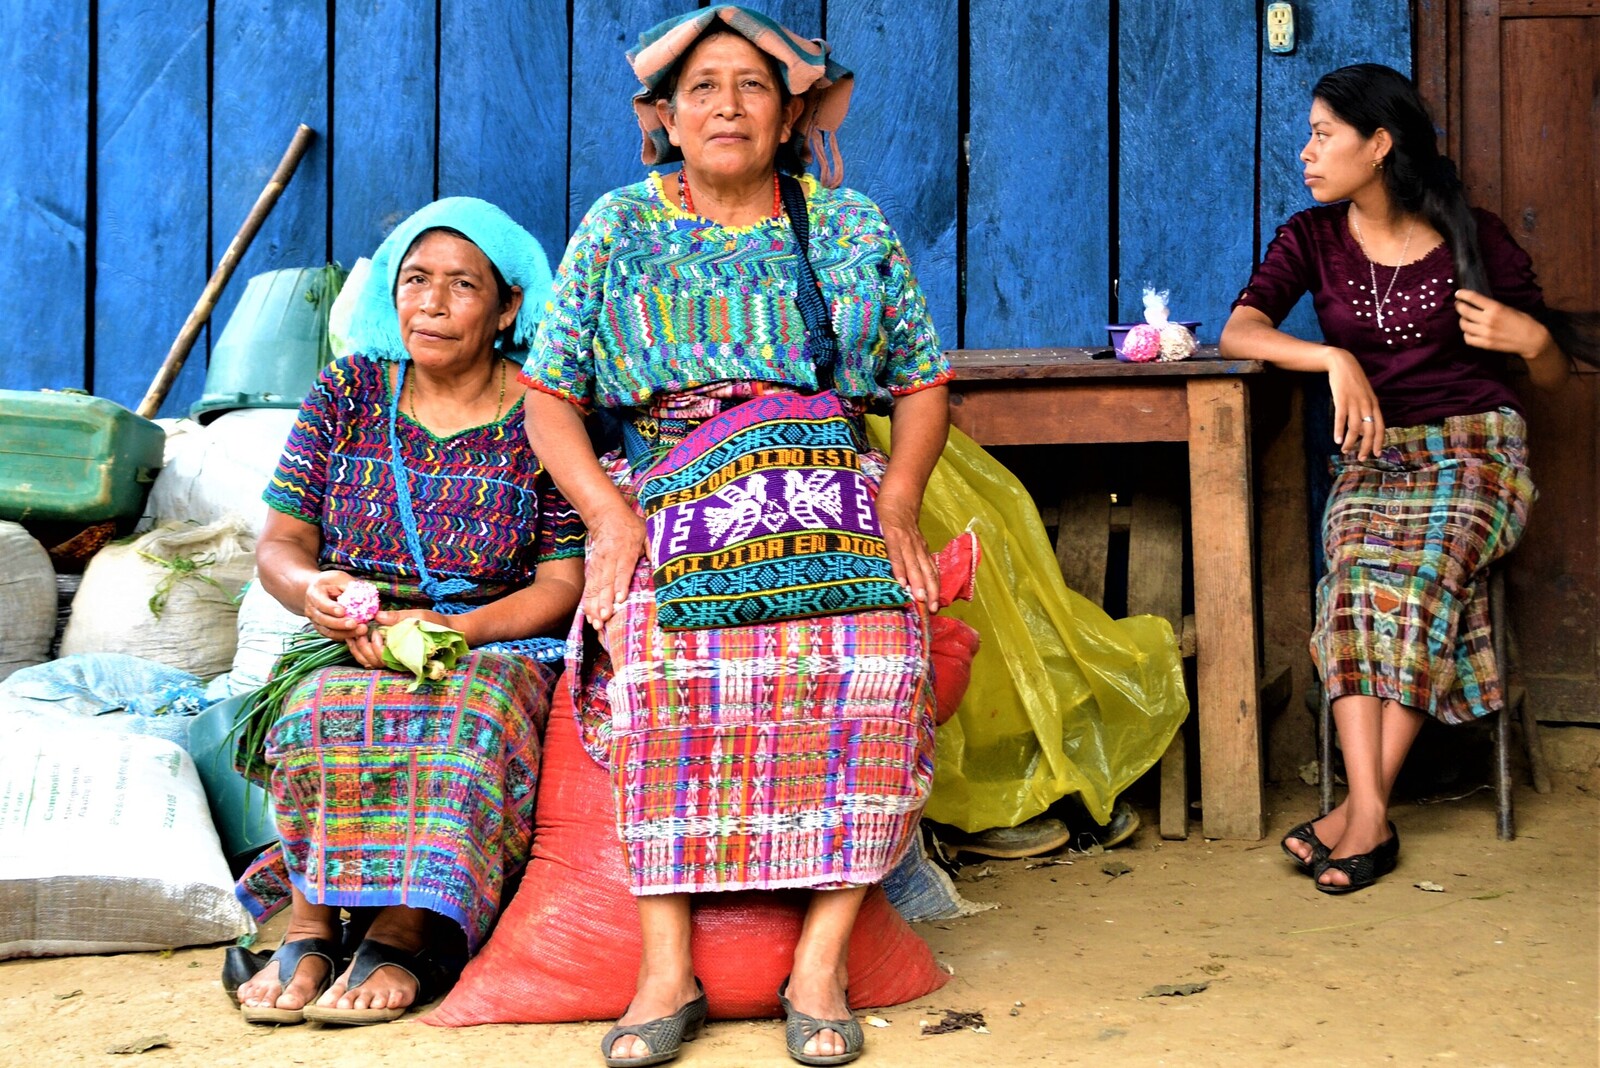 Frauen in einem Hilfsprojekt von AWO International in Guatemala 